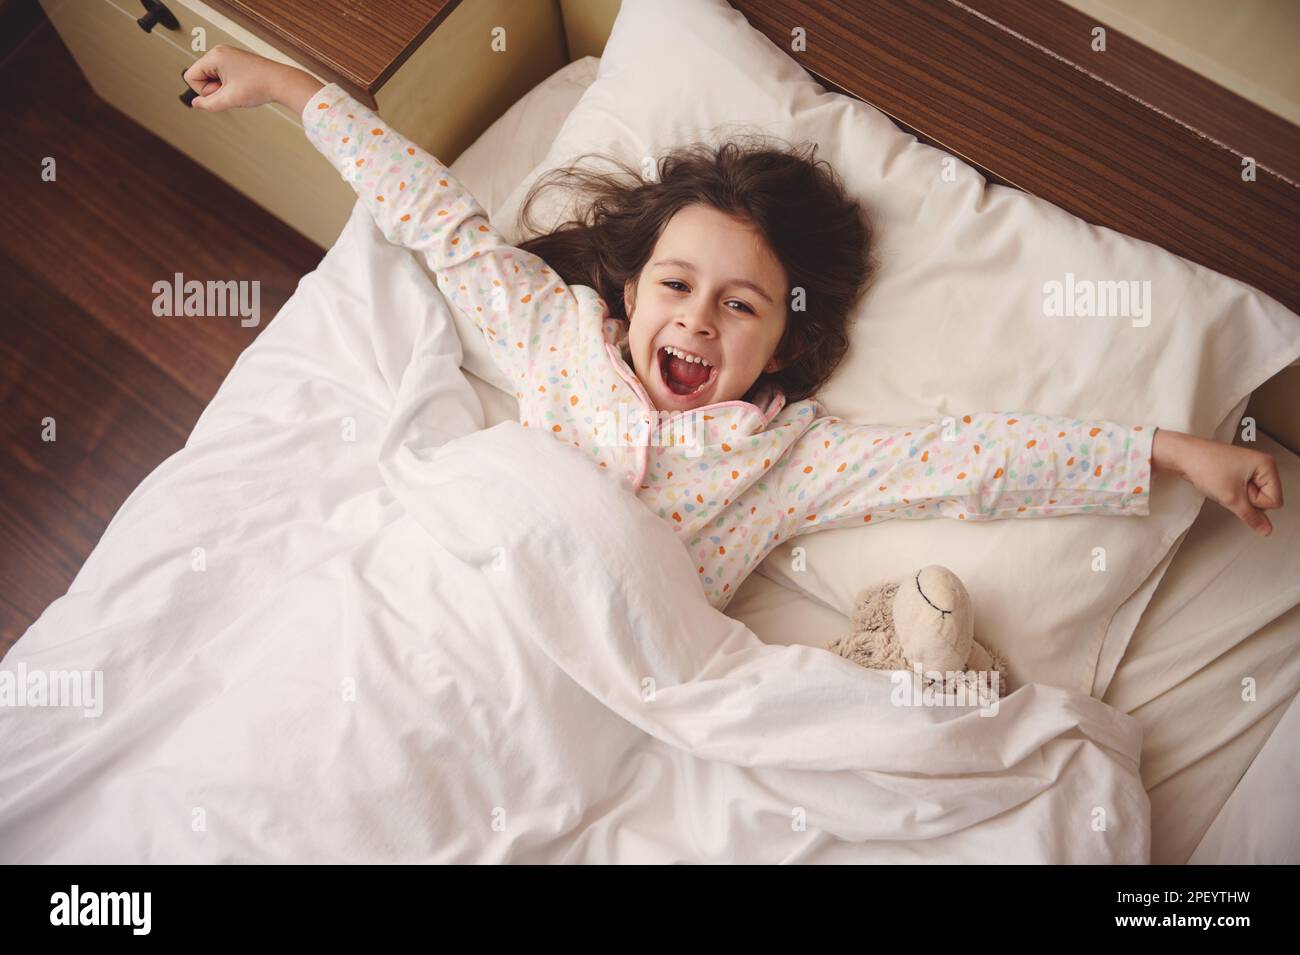 Blick von oben auf das niedliche kleine Mädchen, das die Arme ausstreckt, während es morgens in fröhlicher Stimmung aufwacht Stockfoto